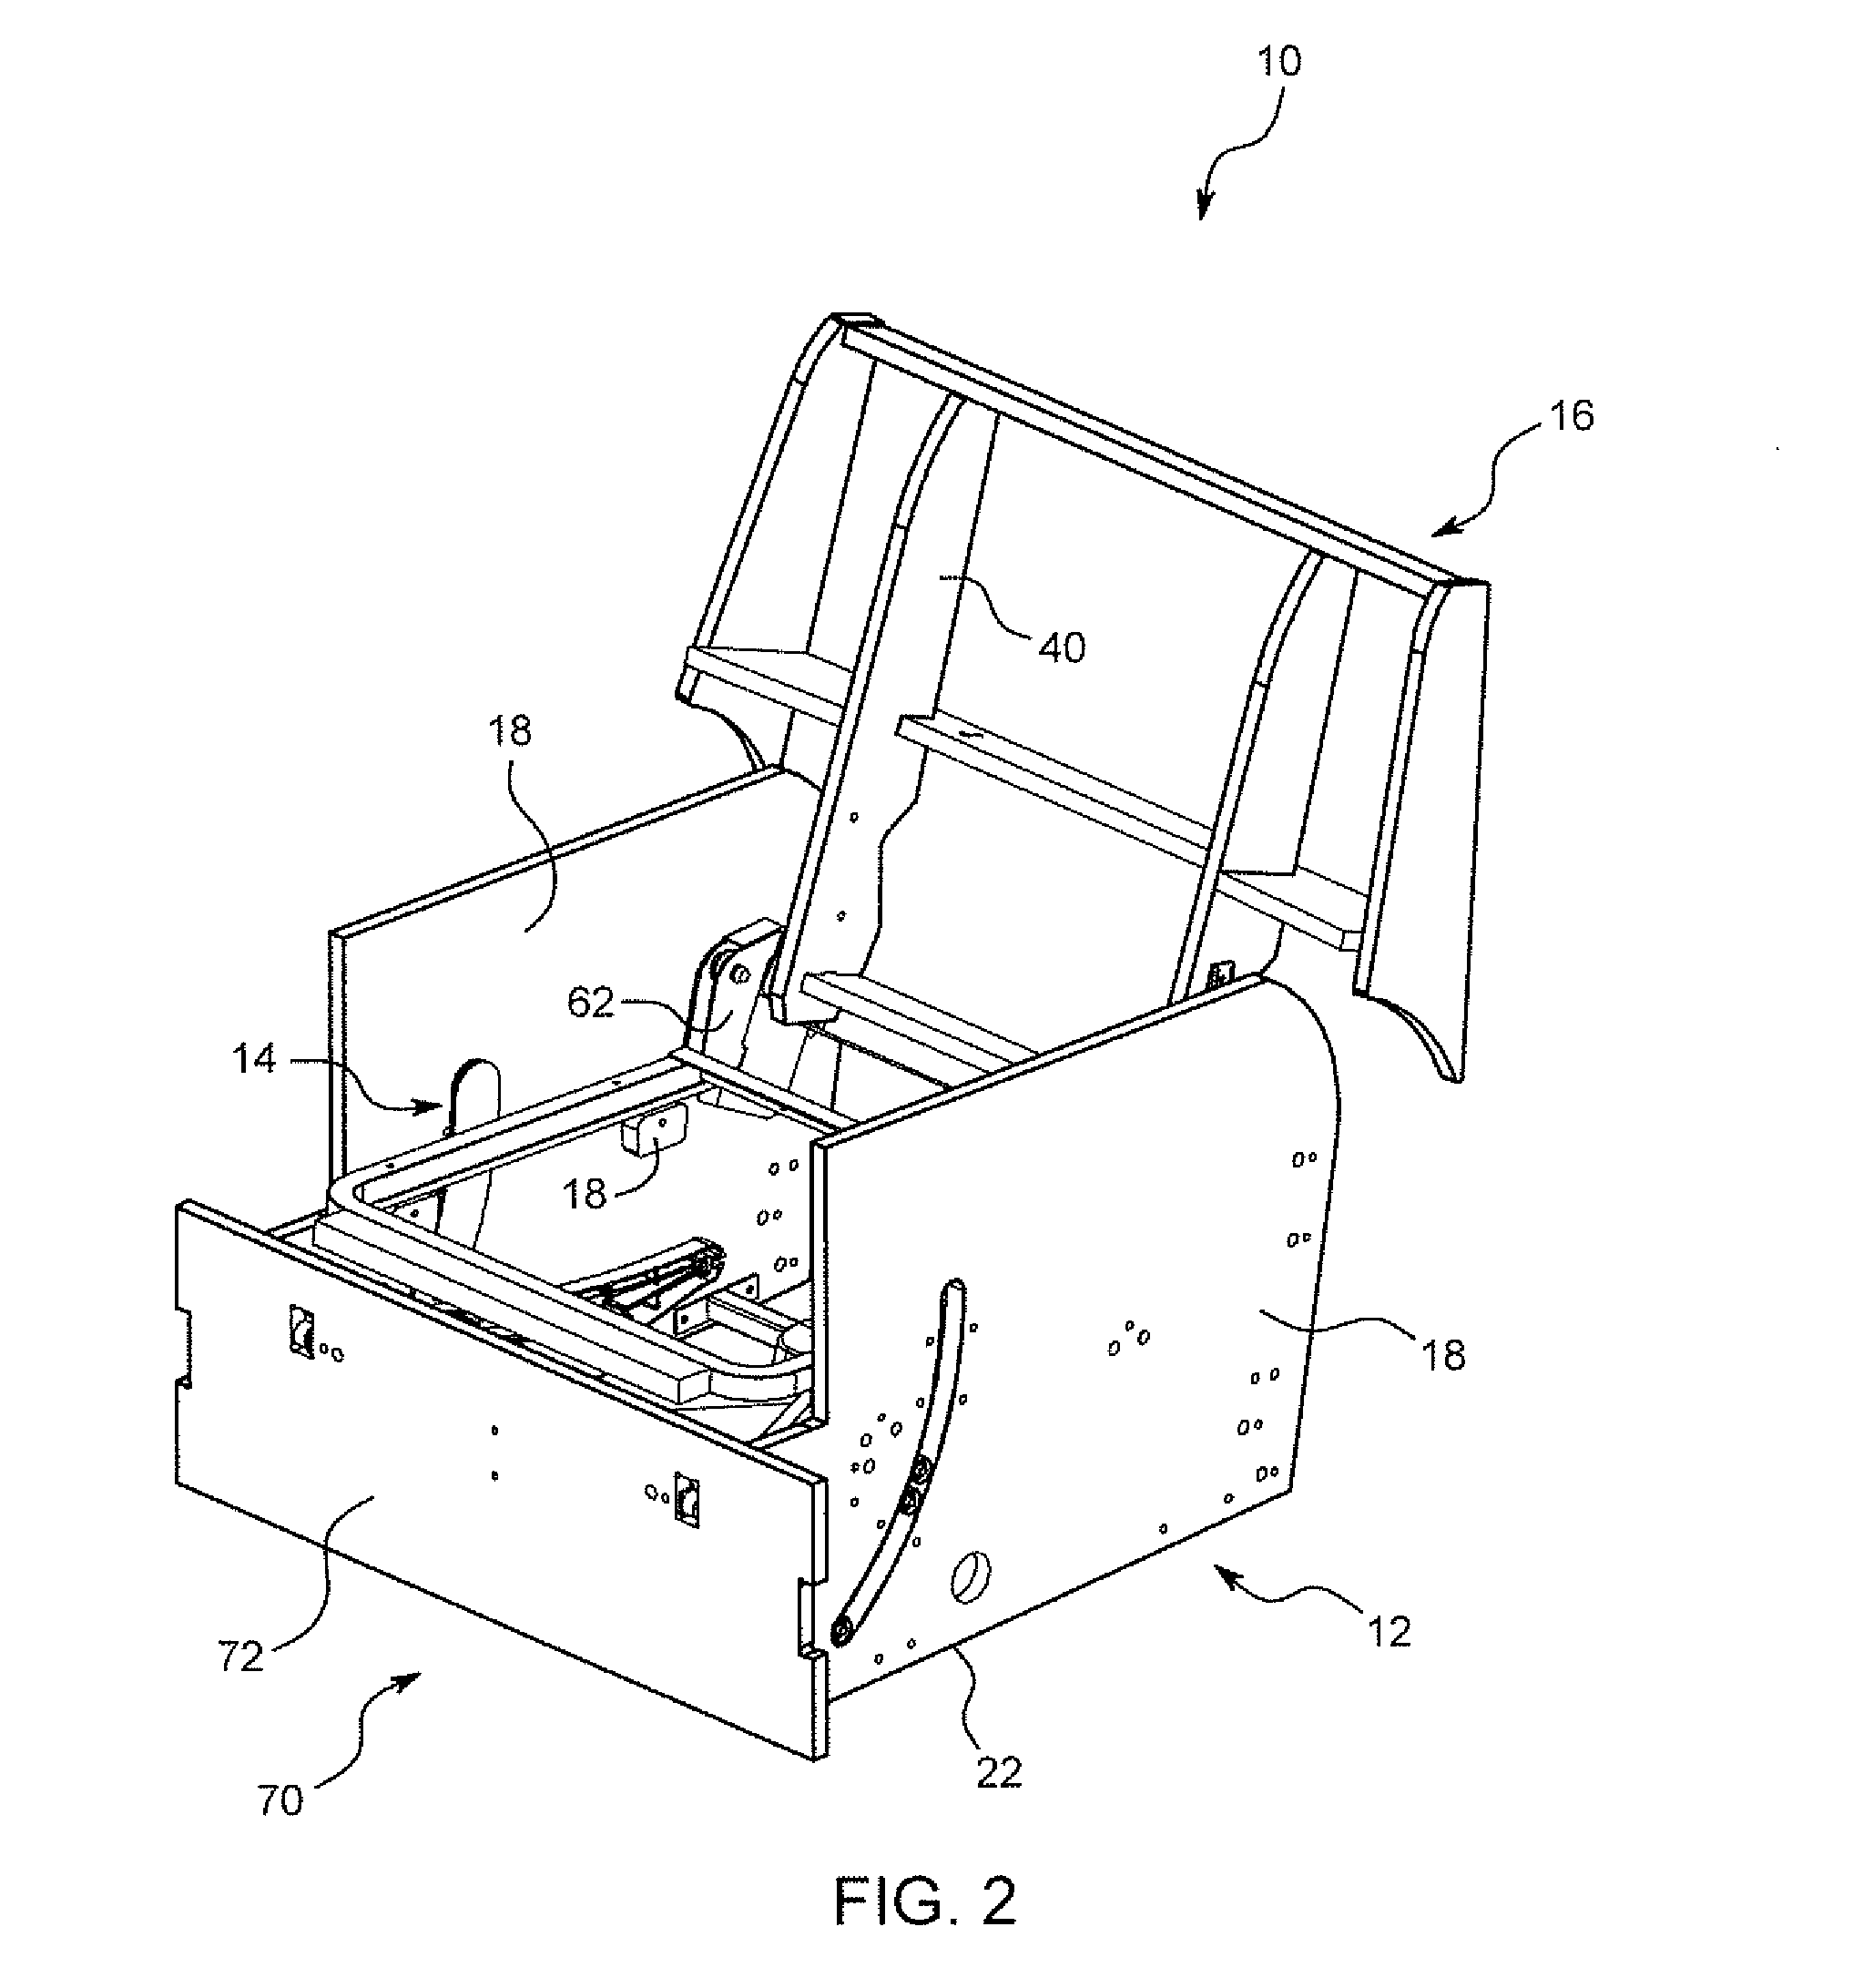 Lift-recliner chair